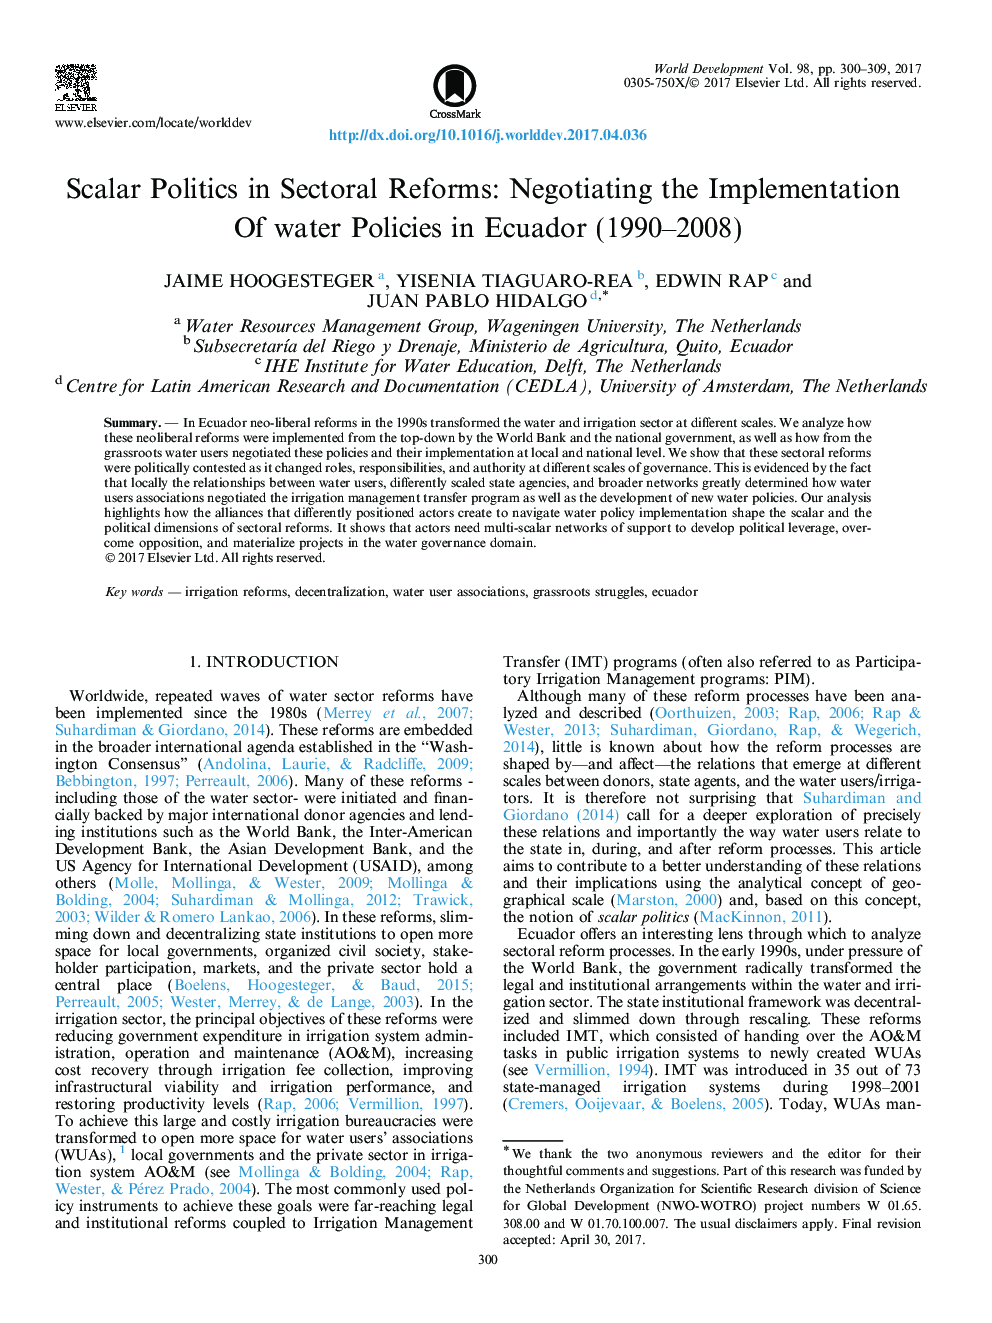 سیاست اسکالر در اصلاحات بخش: مذاکره برای اجرای سیاست های آب در اکوادور (1990-2008) 